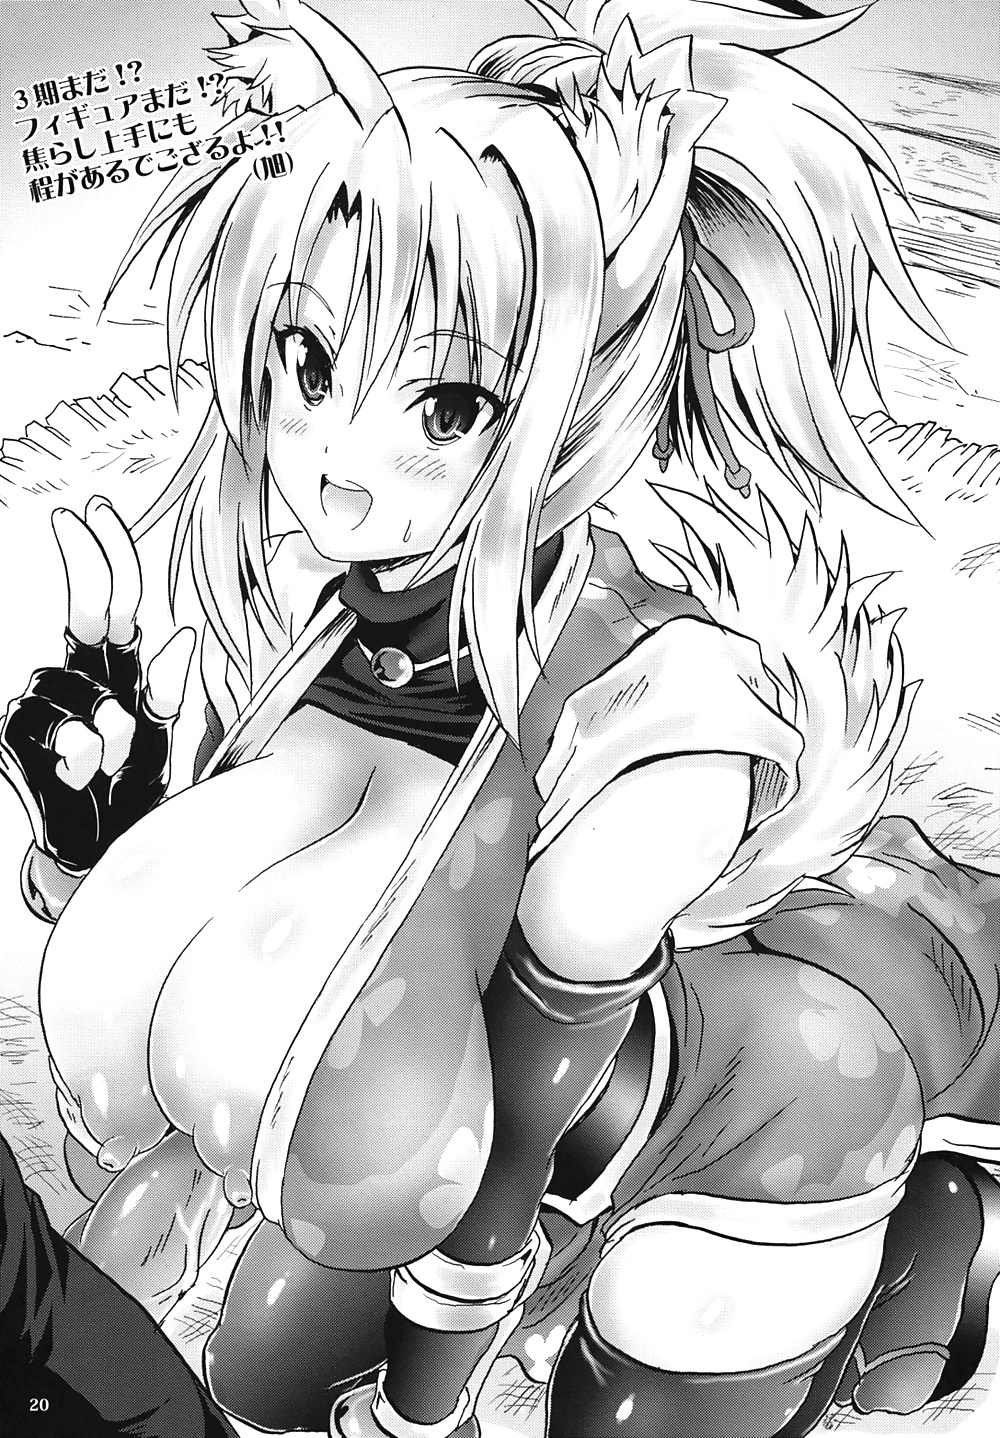 Best of Paizuri(Manga Edition) #30779661